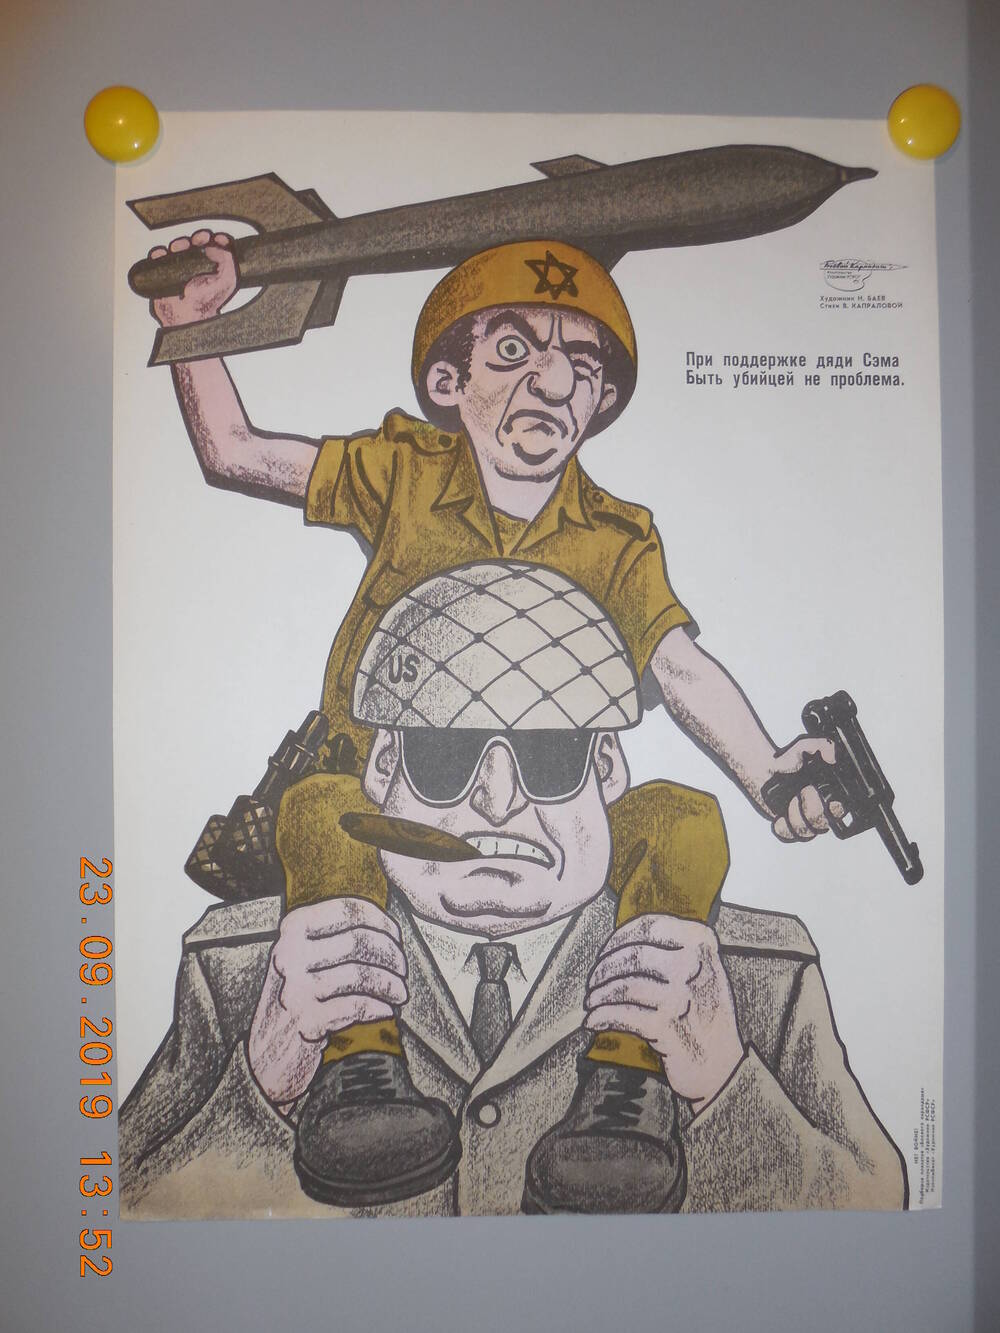 Плакат из подборки сатирических плакатов творческого объединения Боевой карандаш НЕТ ВОЙНЕ
При поддержке дяди Сэма быть убийцей не проблема